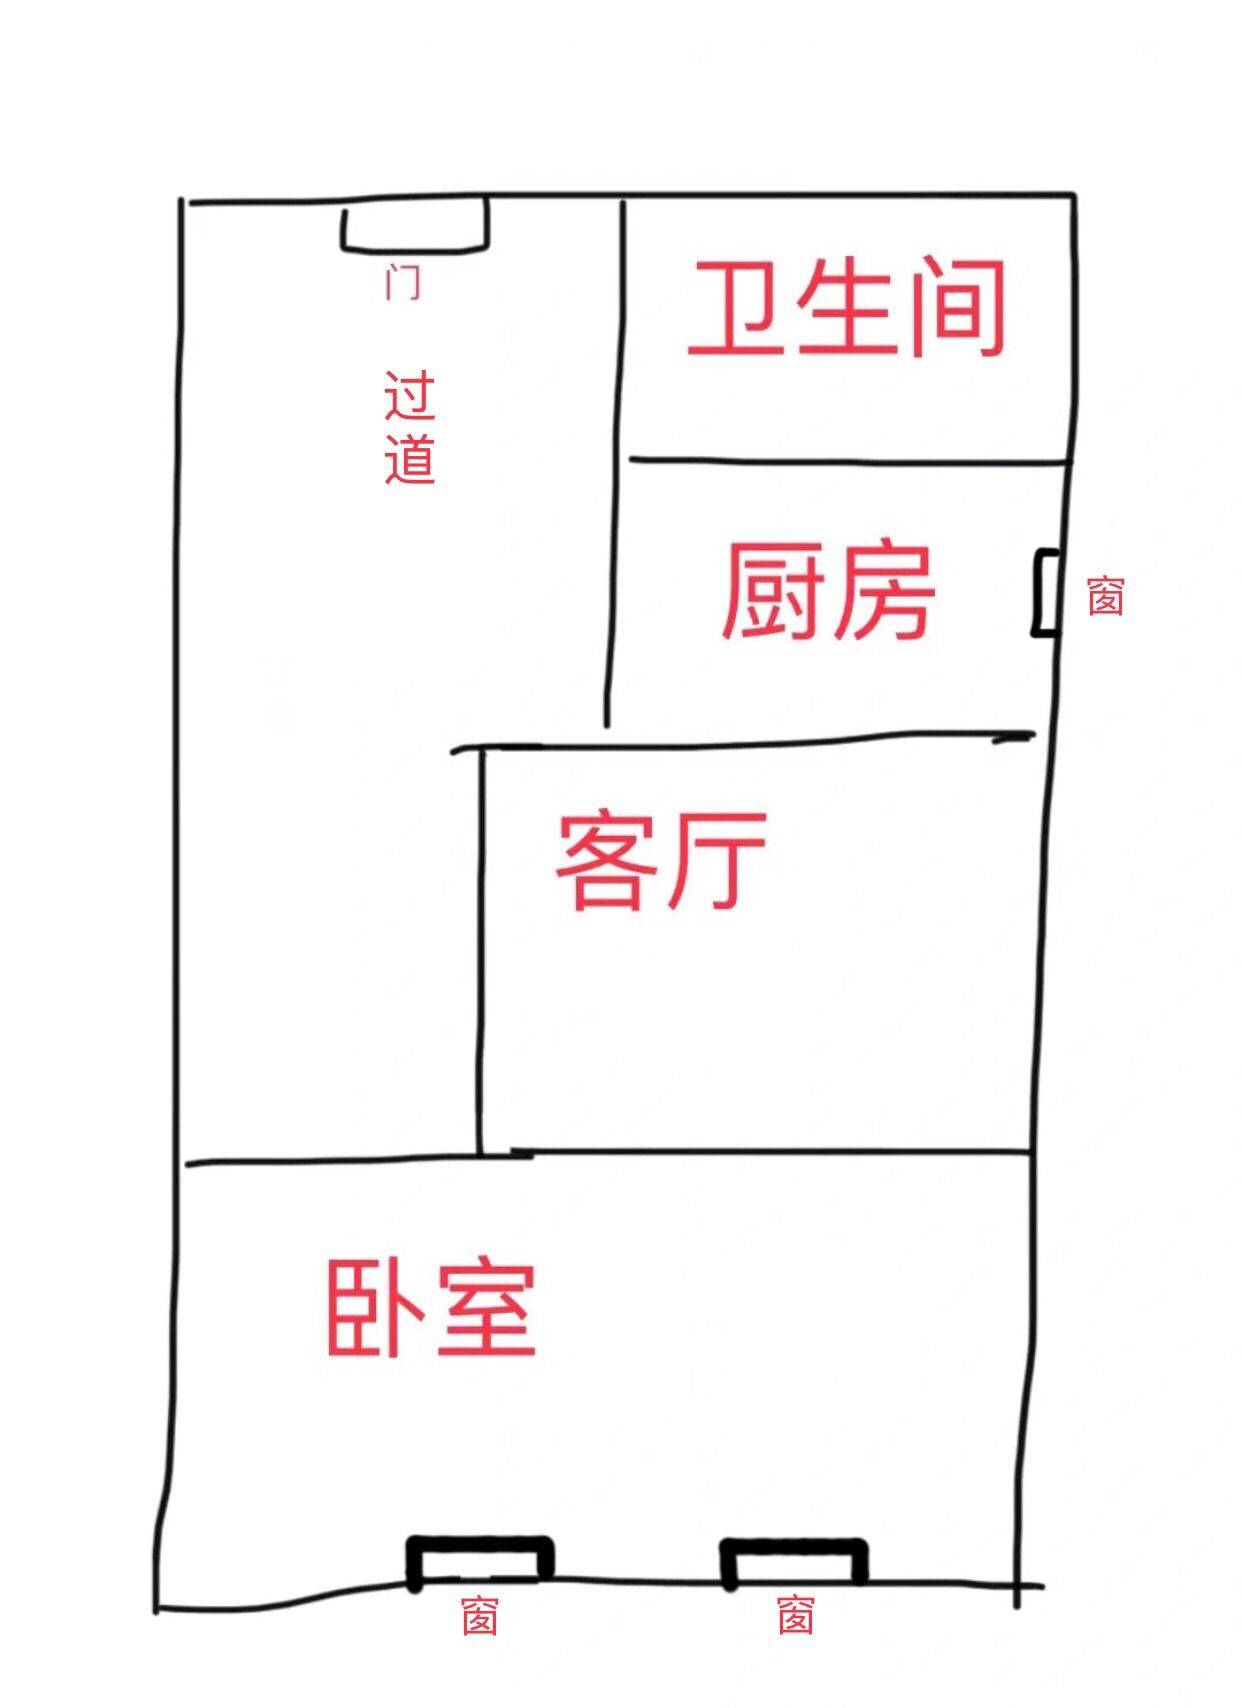 北京-昌平-長租,長&短租,搬離,獨立公寓,LGBTQ友好,寵物友好